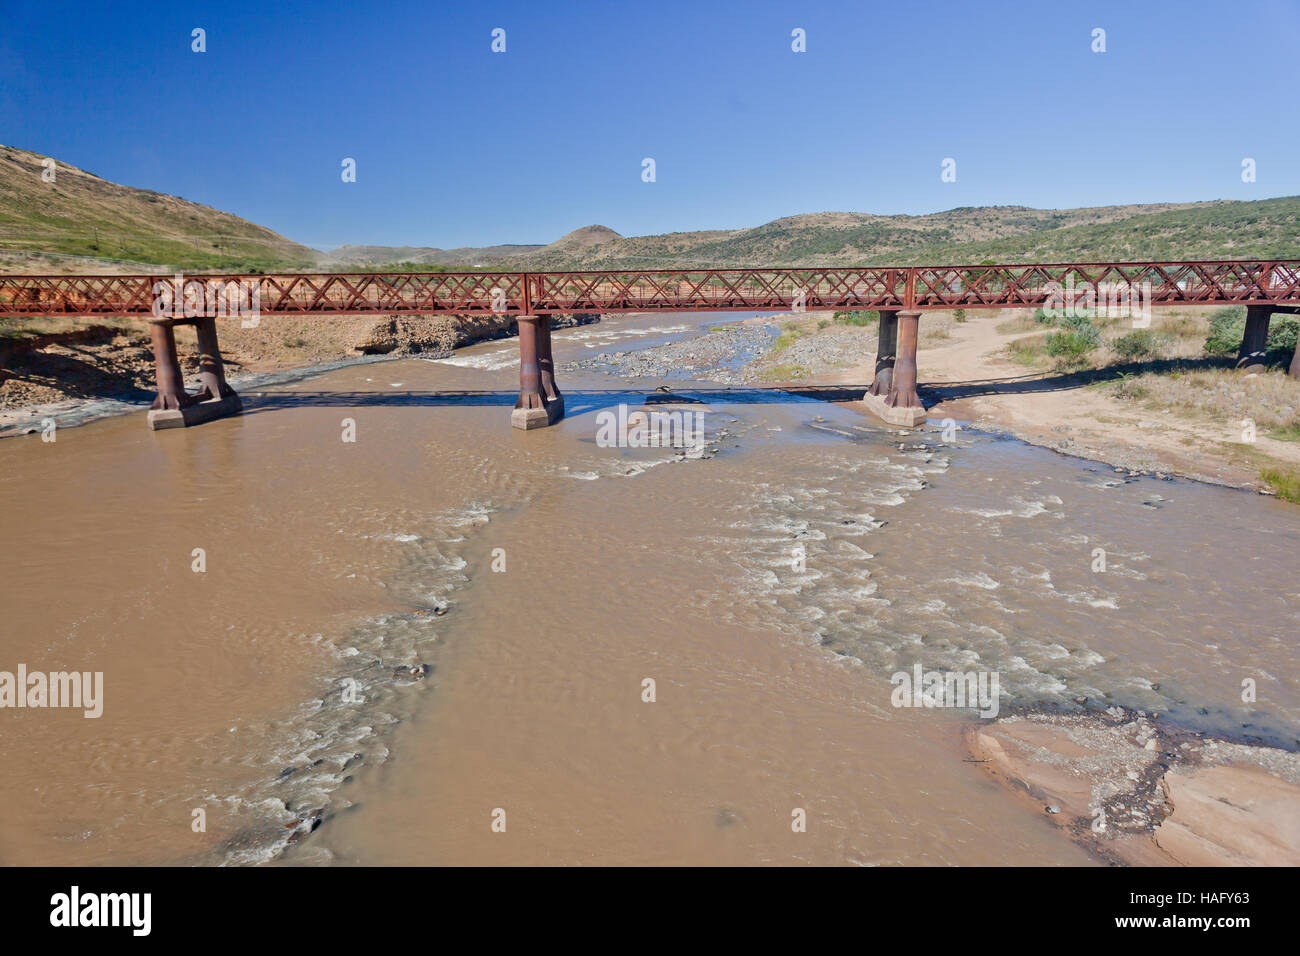 Ponte vecchio metallo acciaio singola corsia struttura sopra le acque del fiume in un paesaggio rurale. Foto Stock